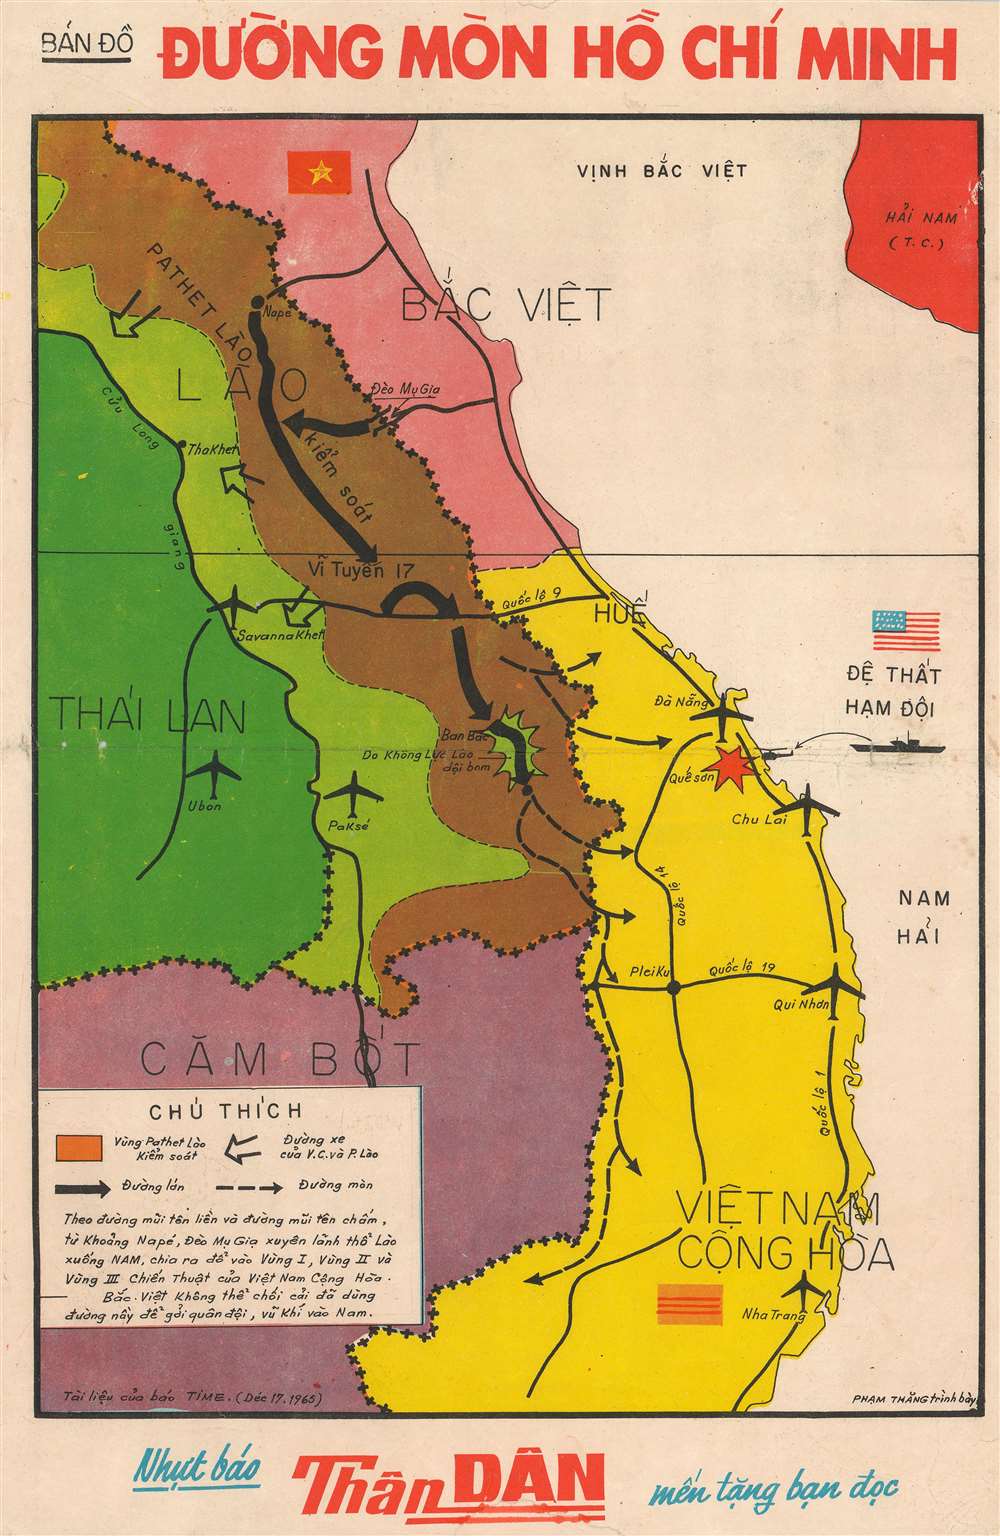 Ho Chi Minh City, Location, History, Map, & Facts